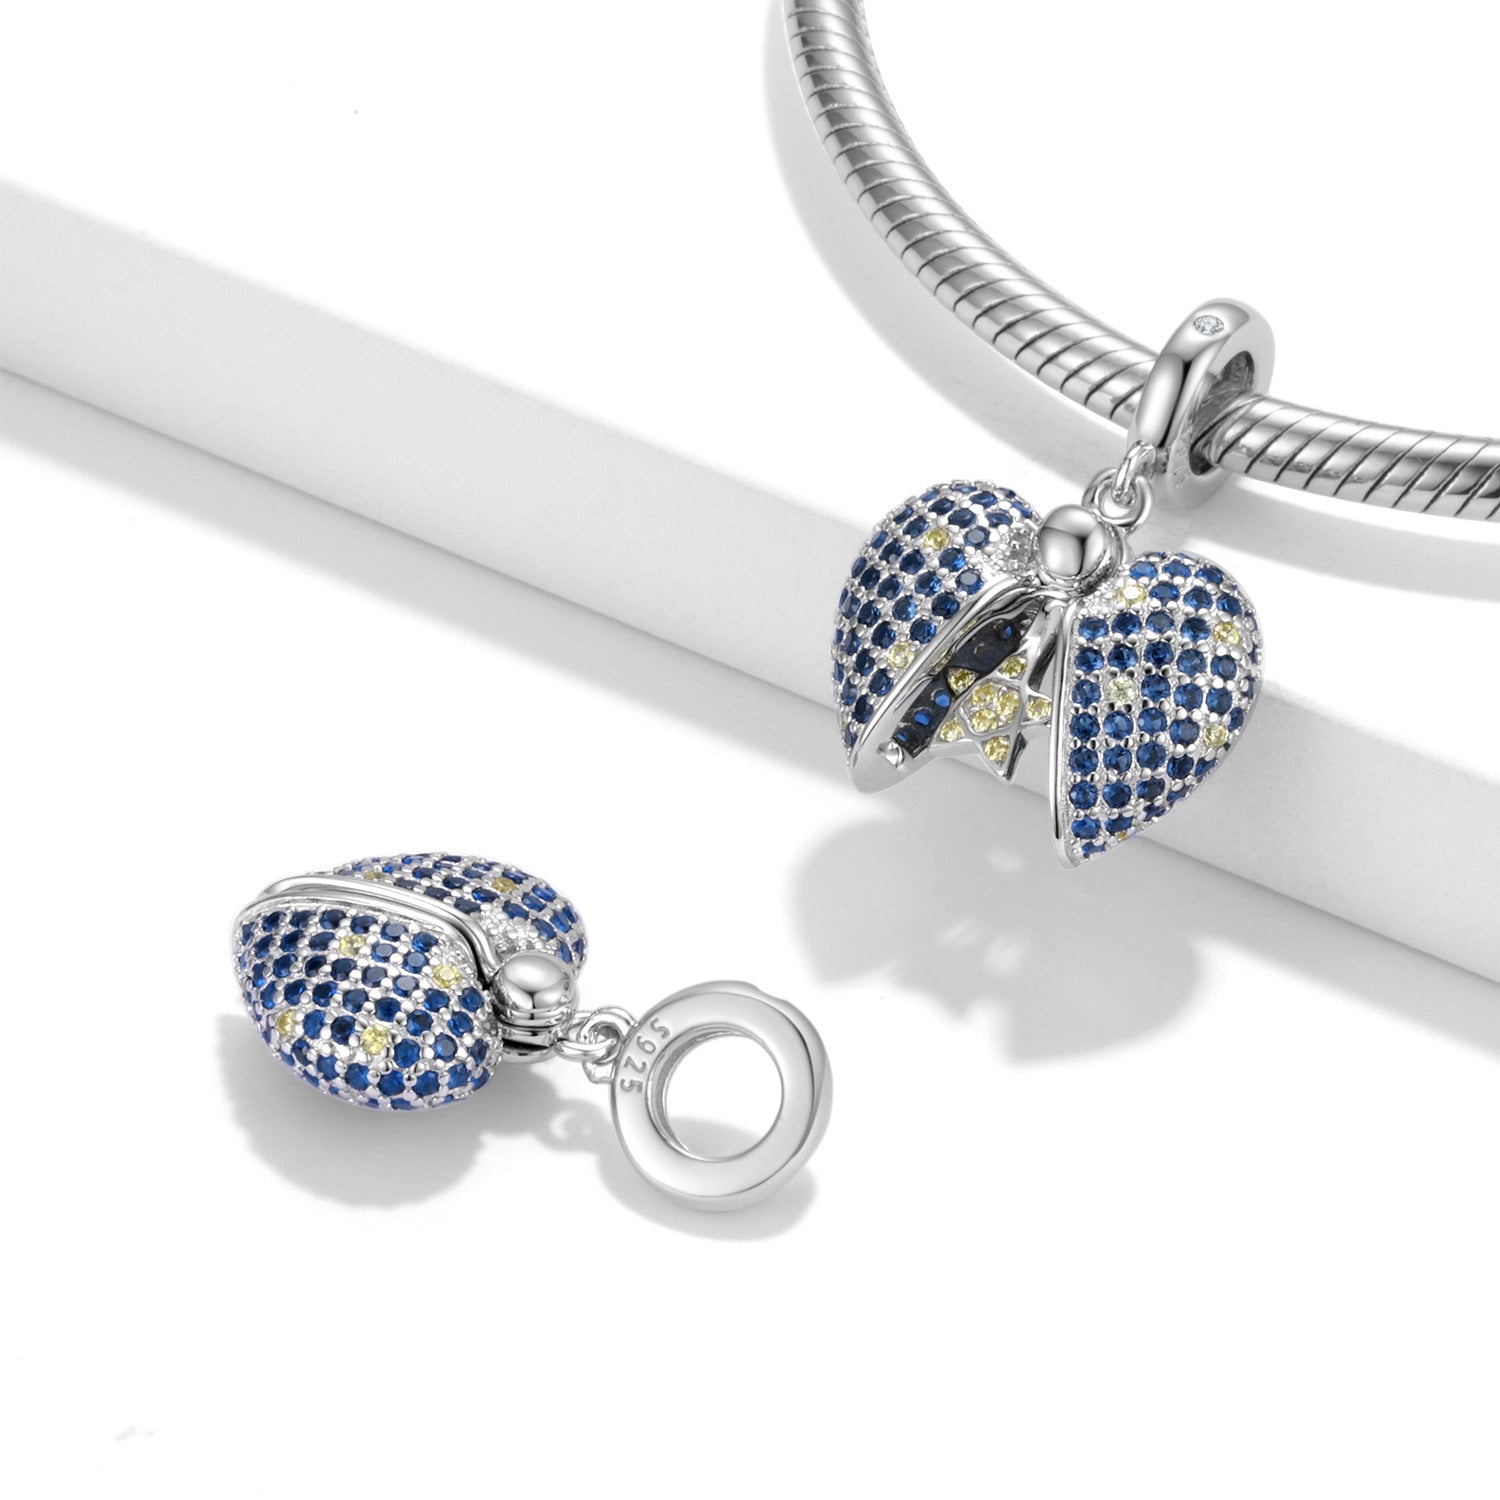 Cuentas de la serie Blue Star Love Lock en plata de ley 925-Blue Star Love Lock Series Beads 925 Sterling Silver Pendant Bracelet DIY Accessories